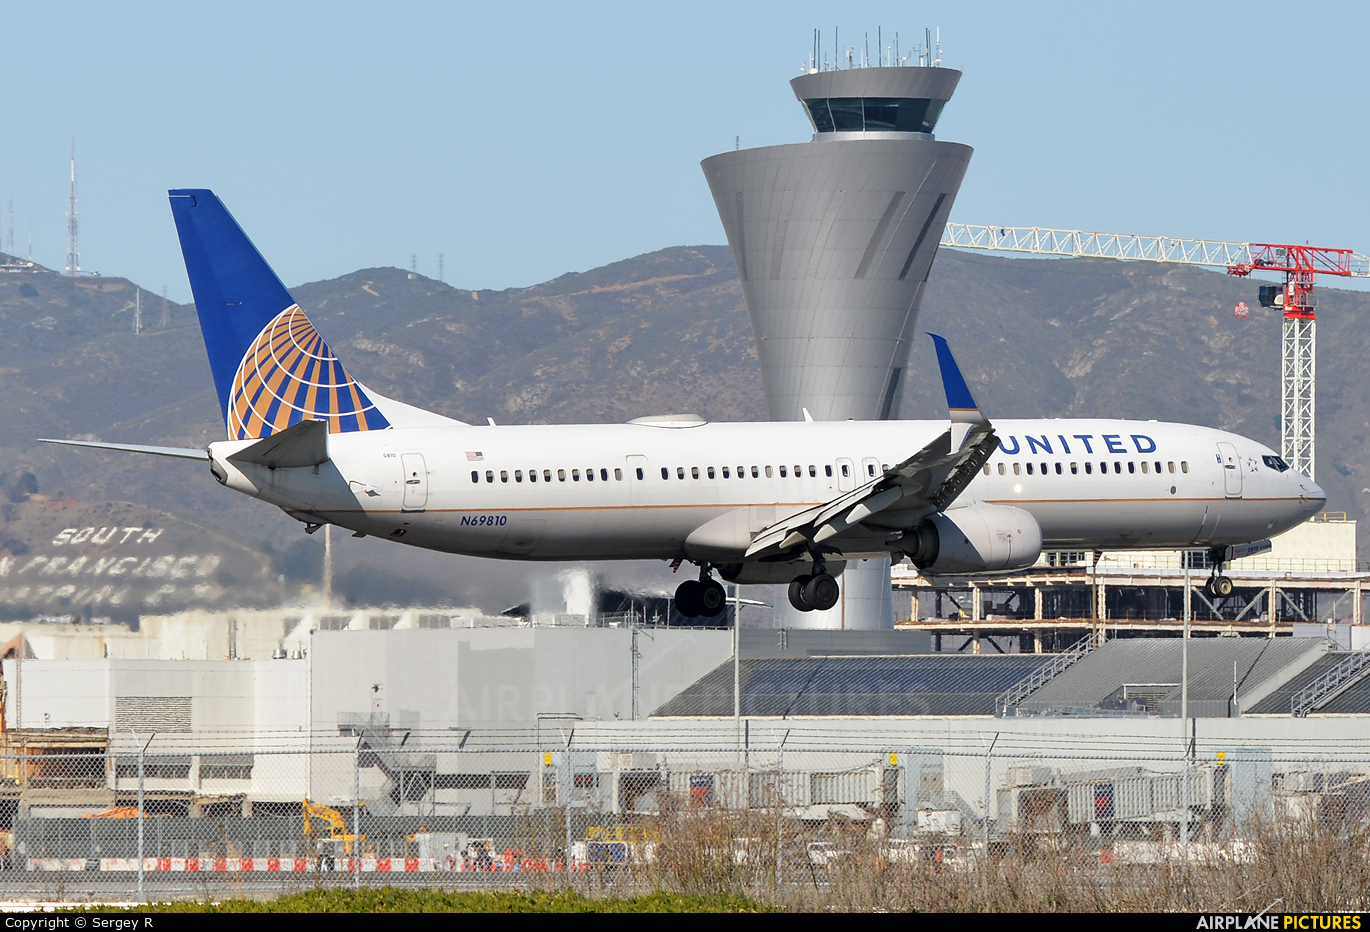 United Airlines N69810 aircraft at San Francisco Intl